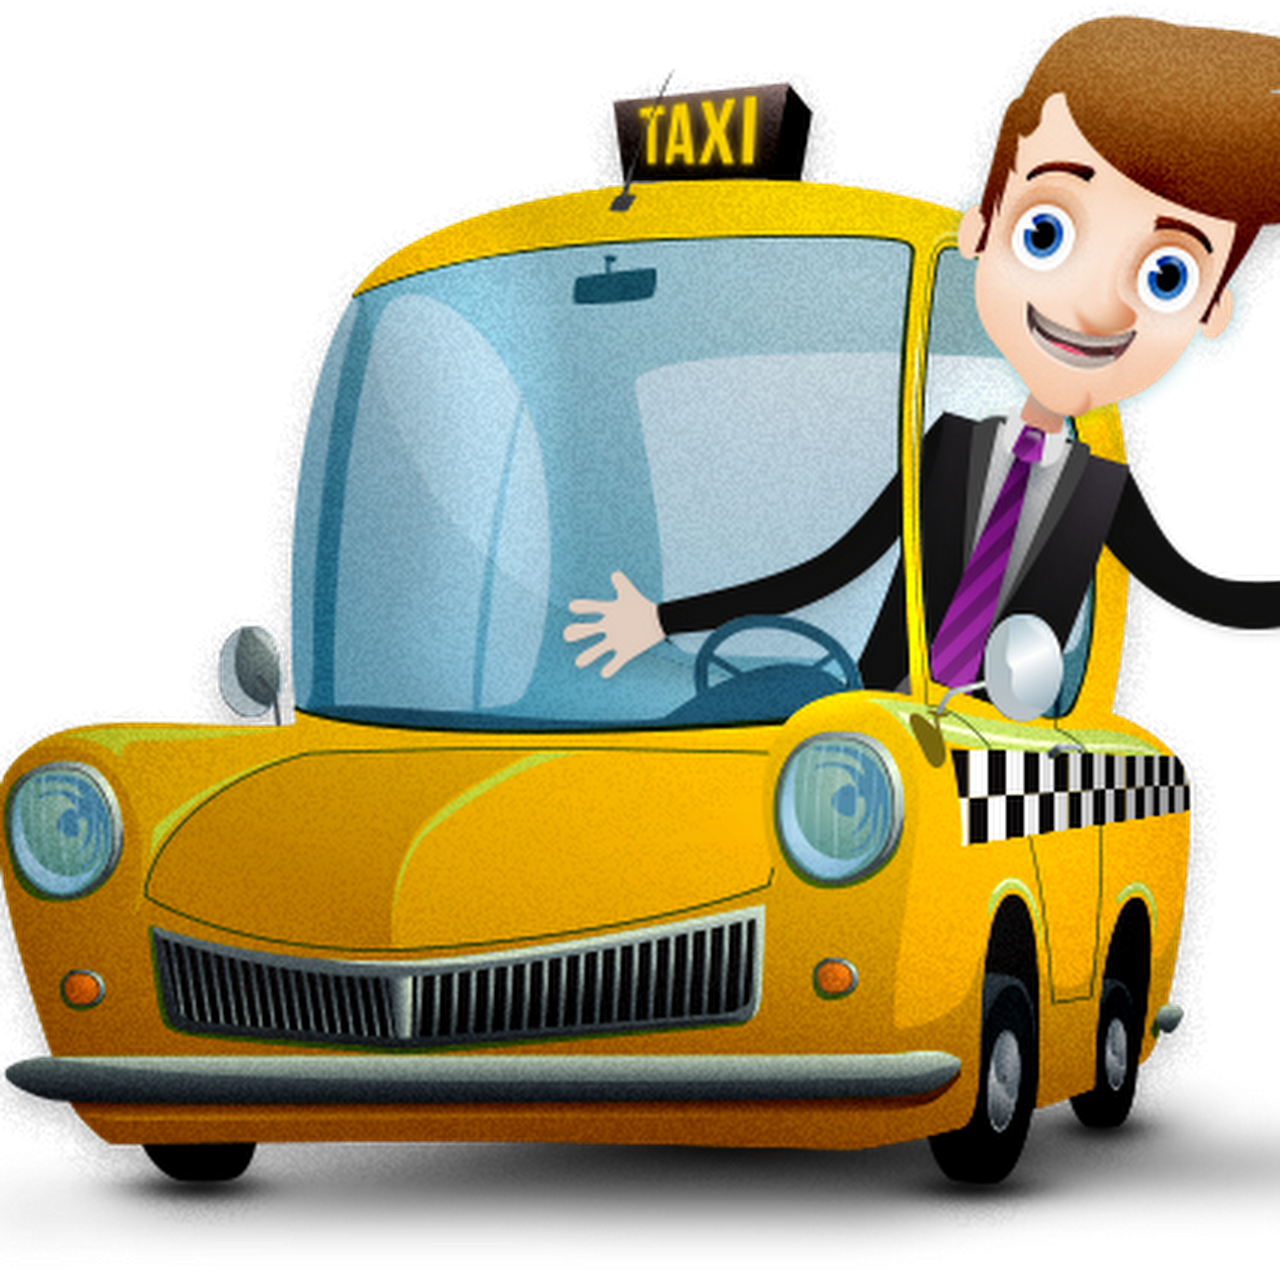 Шофер для детей. Мультяшная машинка такси. Шофер мультяшный. Профессия таксист для детей. Водитель такси картинка